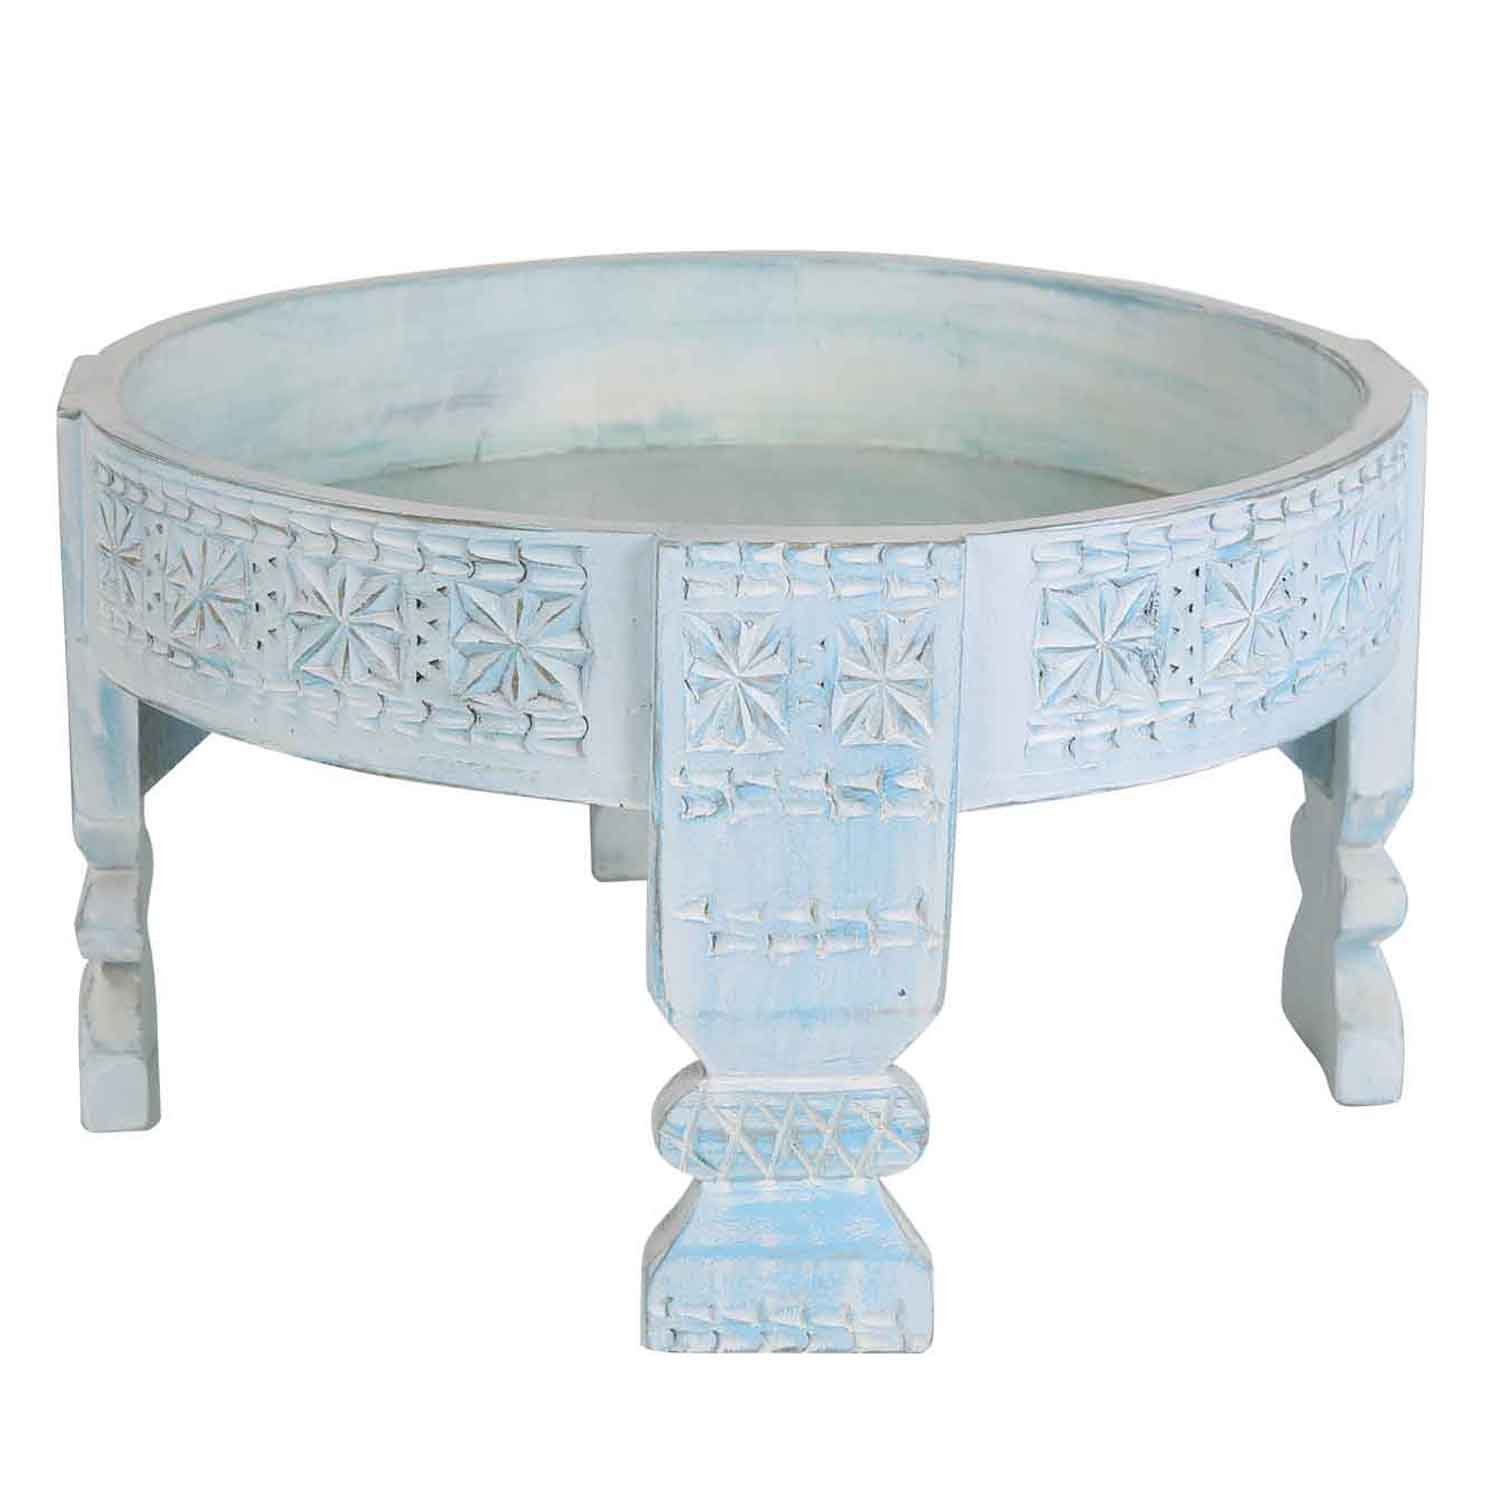 Casa Moro Beistelltisch Orientalischer Beistelltisch Zaman Ø 55cm Massivholz geschnitzt (Chakki Tisch, Shabby Chic Mühlen-Dekor Weiß gekalkt Mühlen-Tisch), Kunsthandwerk Blau